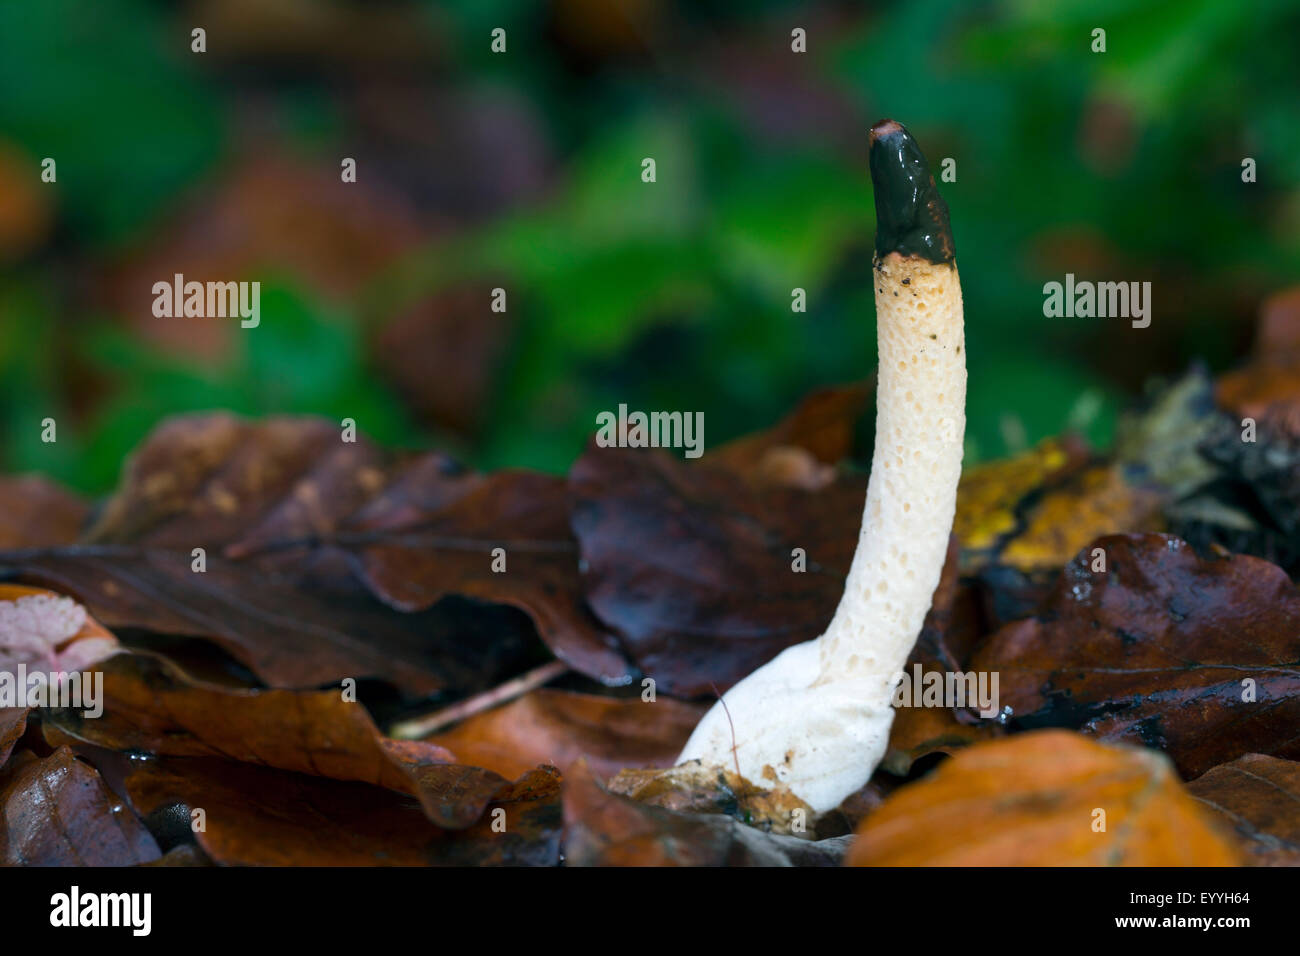 dog stinkhorn (Mutinus caninus, Phallus caninus), on forest ground, Germany Stock Photo